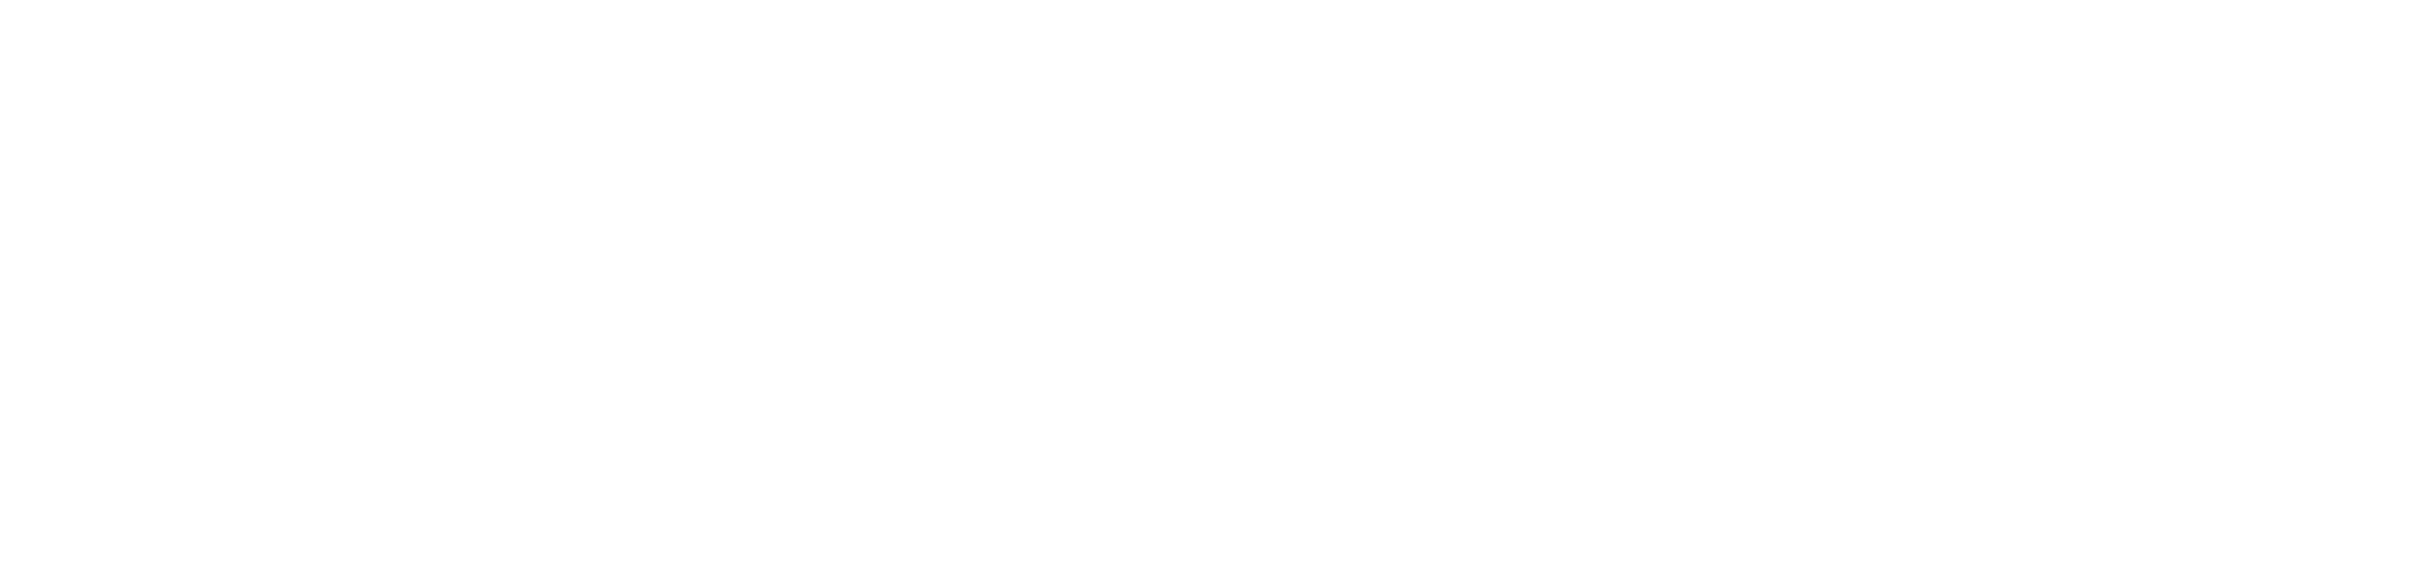 La double vie de Saint-Germain-des-Prés